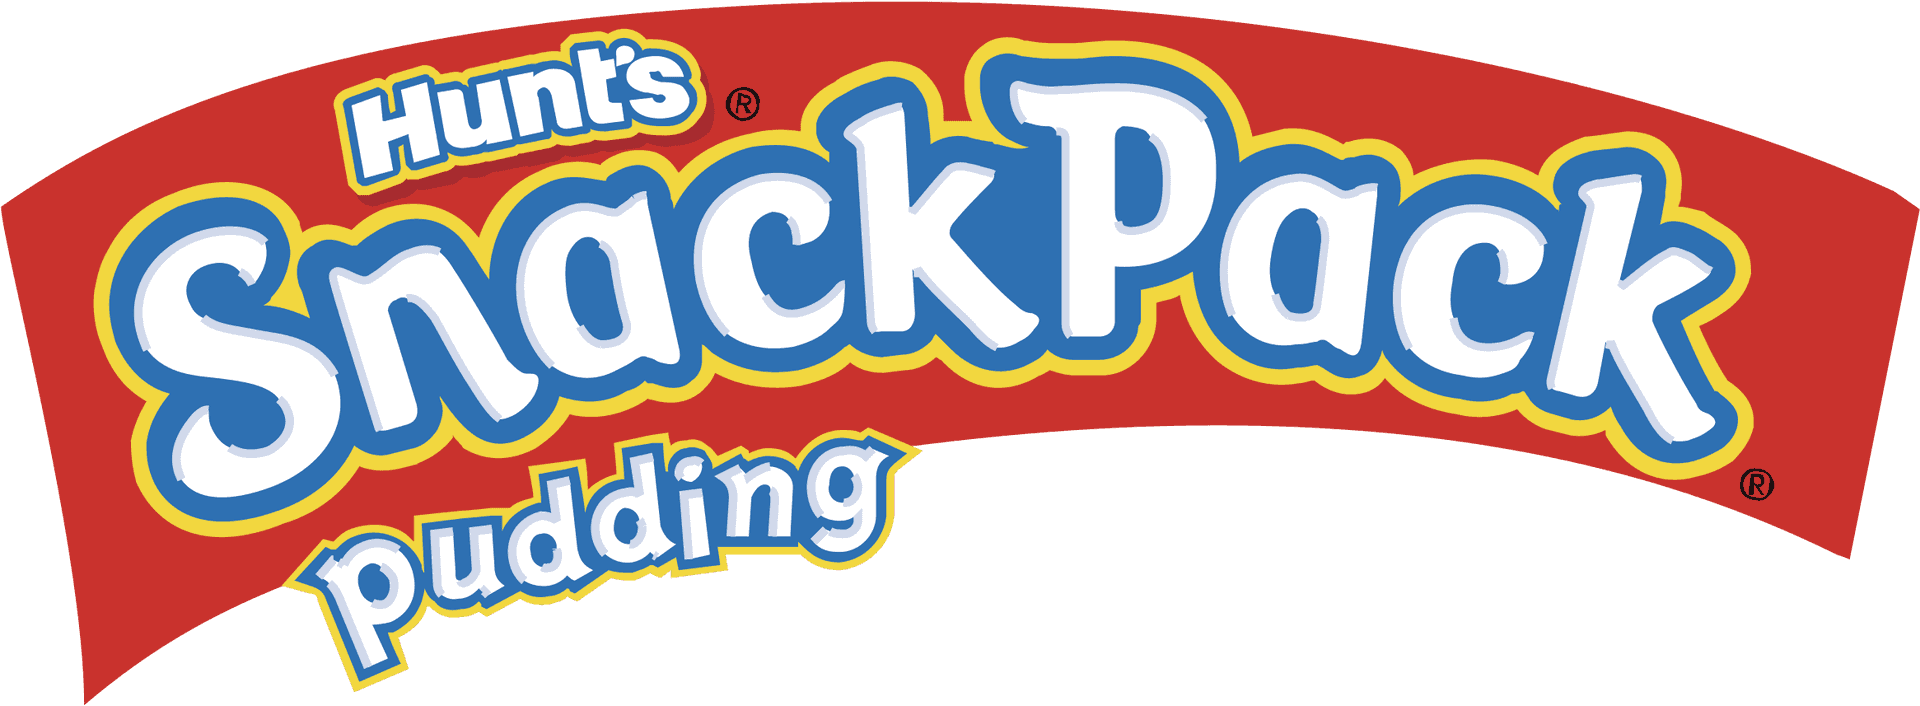 Hunts Snack Pack Pudding Logo PNG